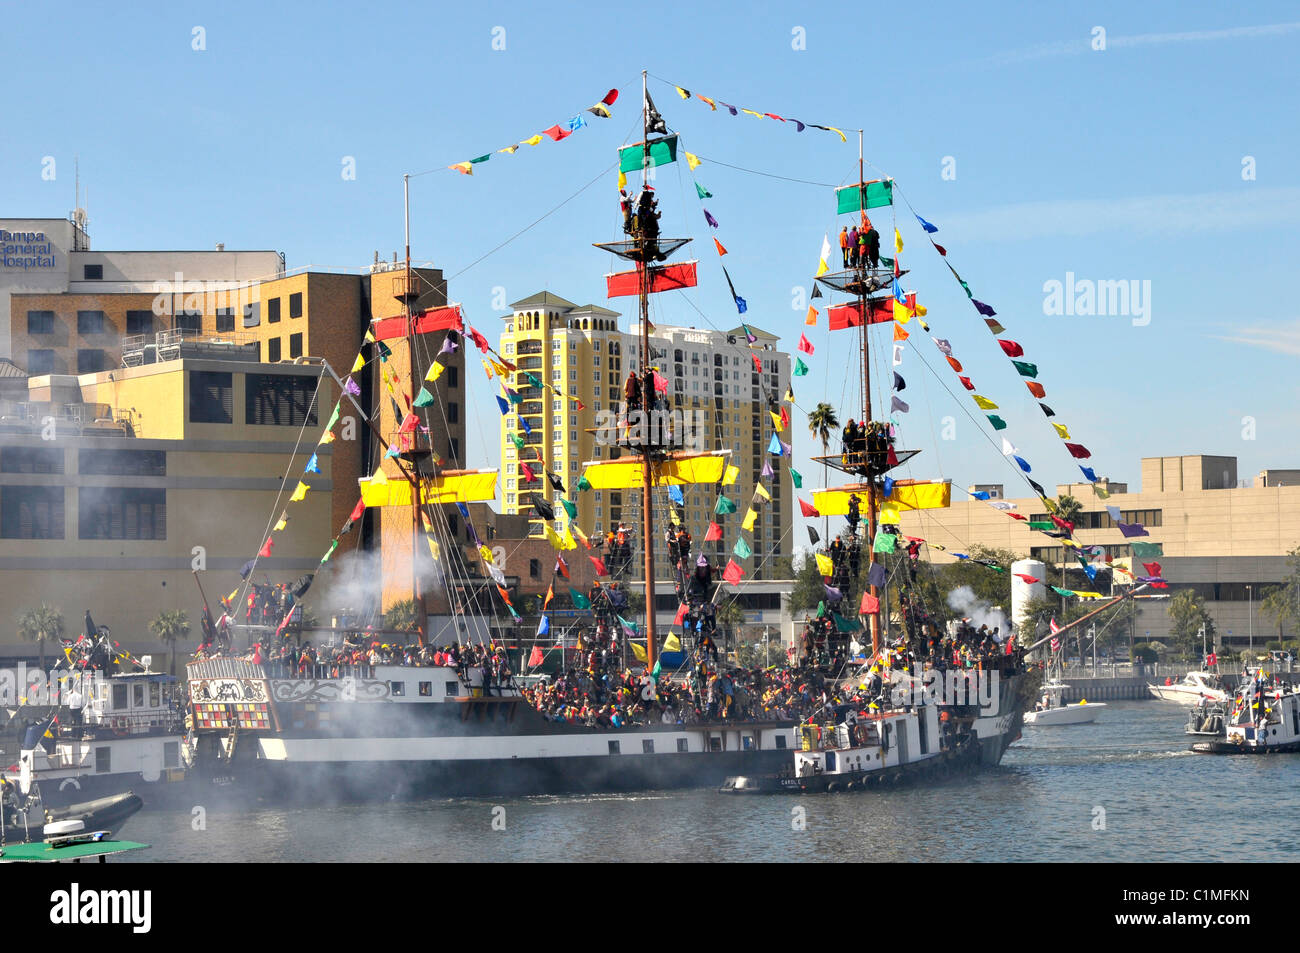 Gasparilla Pirate Boat during Festival Tampa Florida Hillsborough River Stock Photo